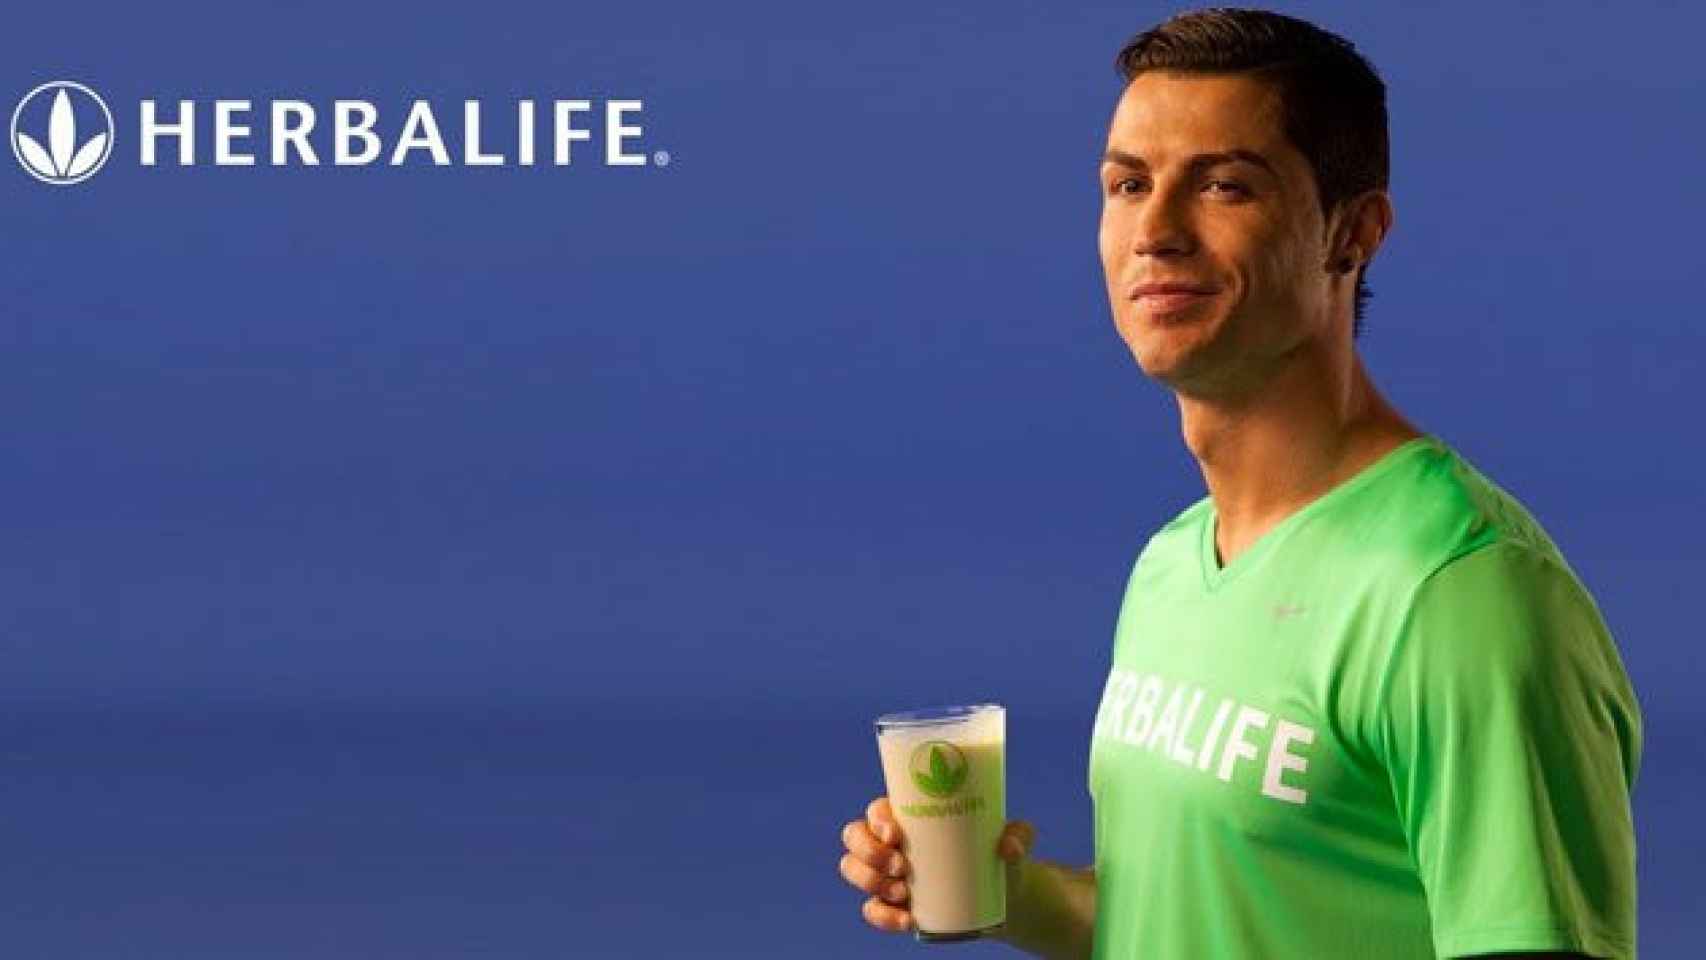 Cristiano Ronaldo, fichaje estrella para ser embajador de Herbalife